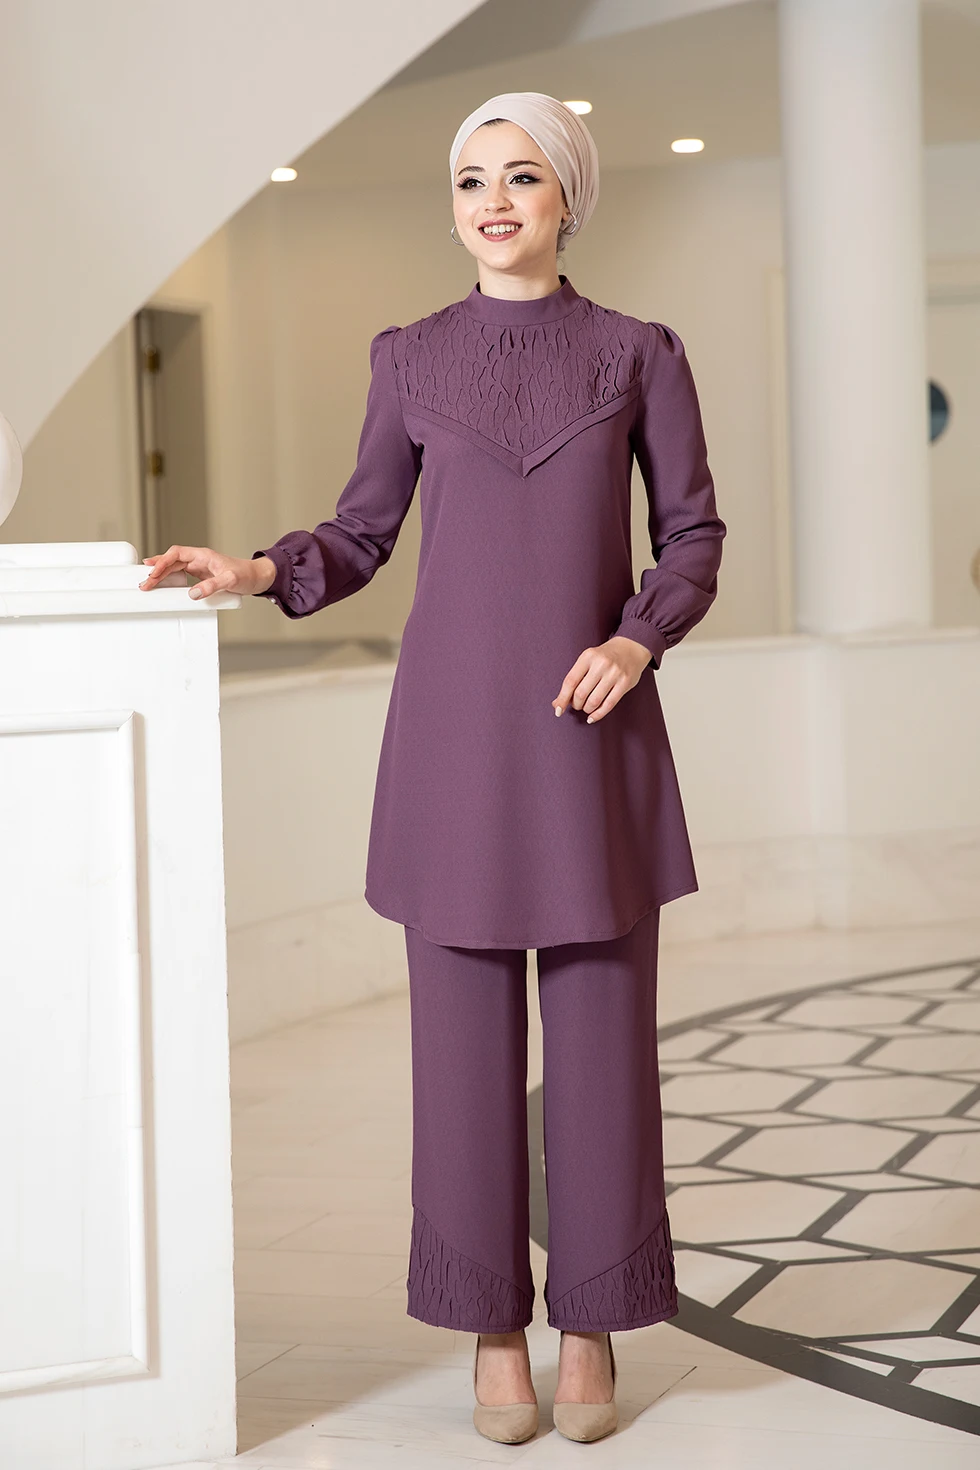 Muslim Dress Women 2 Piece Set Top And Pants Dubai Abaya Ropa Robe Turkey African Islamic Clothing Tunic Outfit Stylish modern